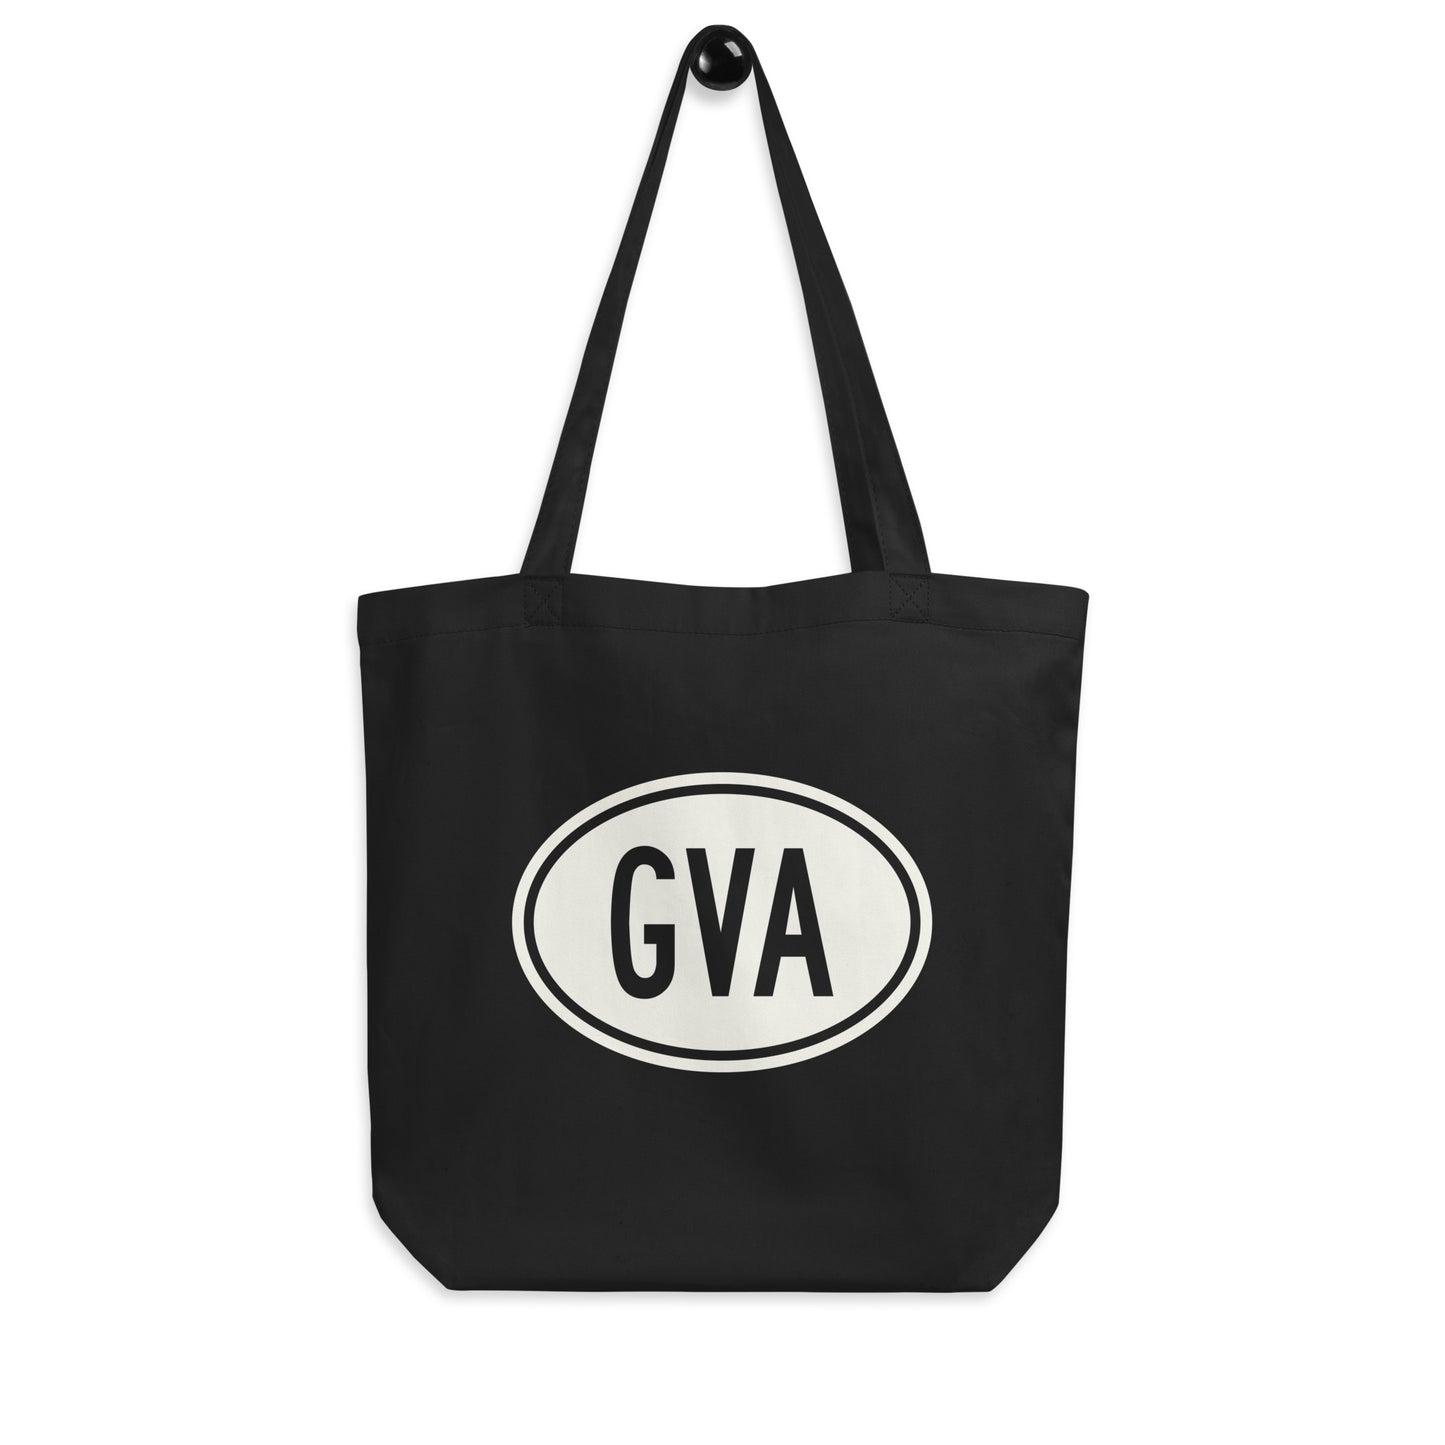 Unique Travel Gift Organic Tote - White Oval • GVA Geneva • YHM Designs - Image 04